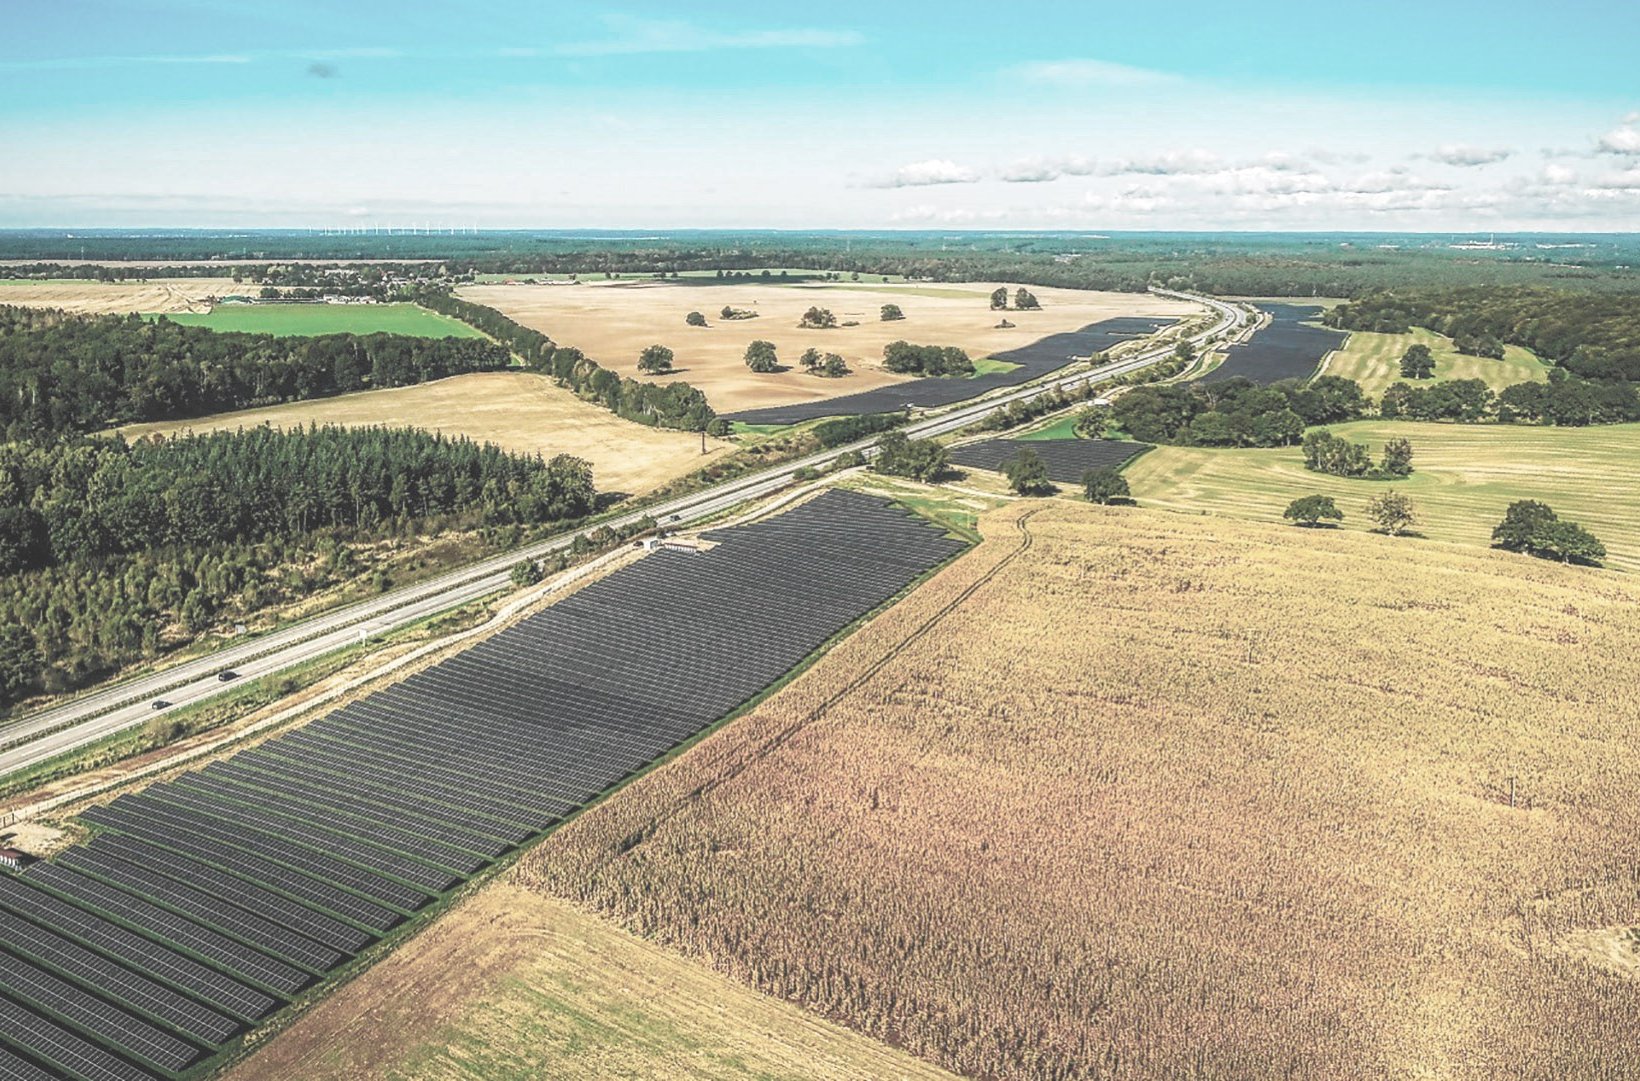 Freiflächen-Photovoltaikanlage Kogel Leizen in Mecklenburg-Vorpommern